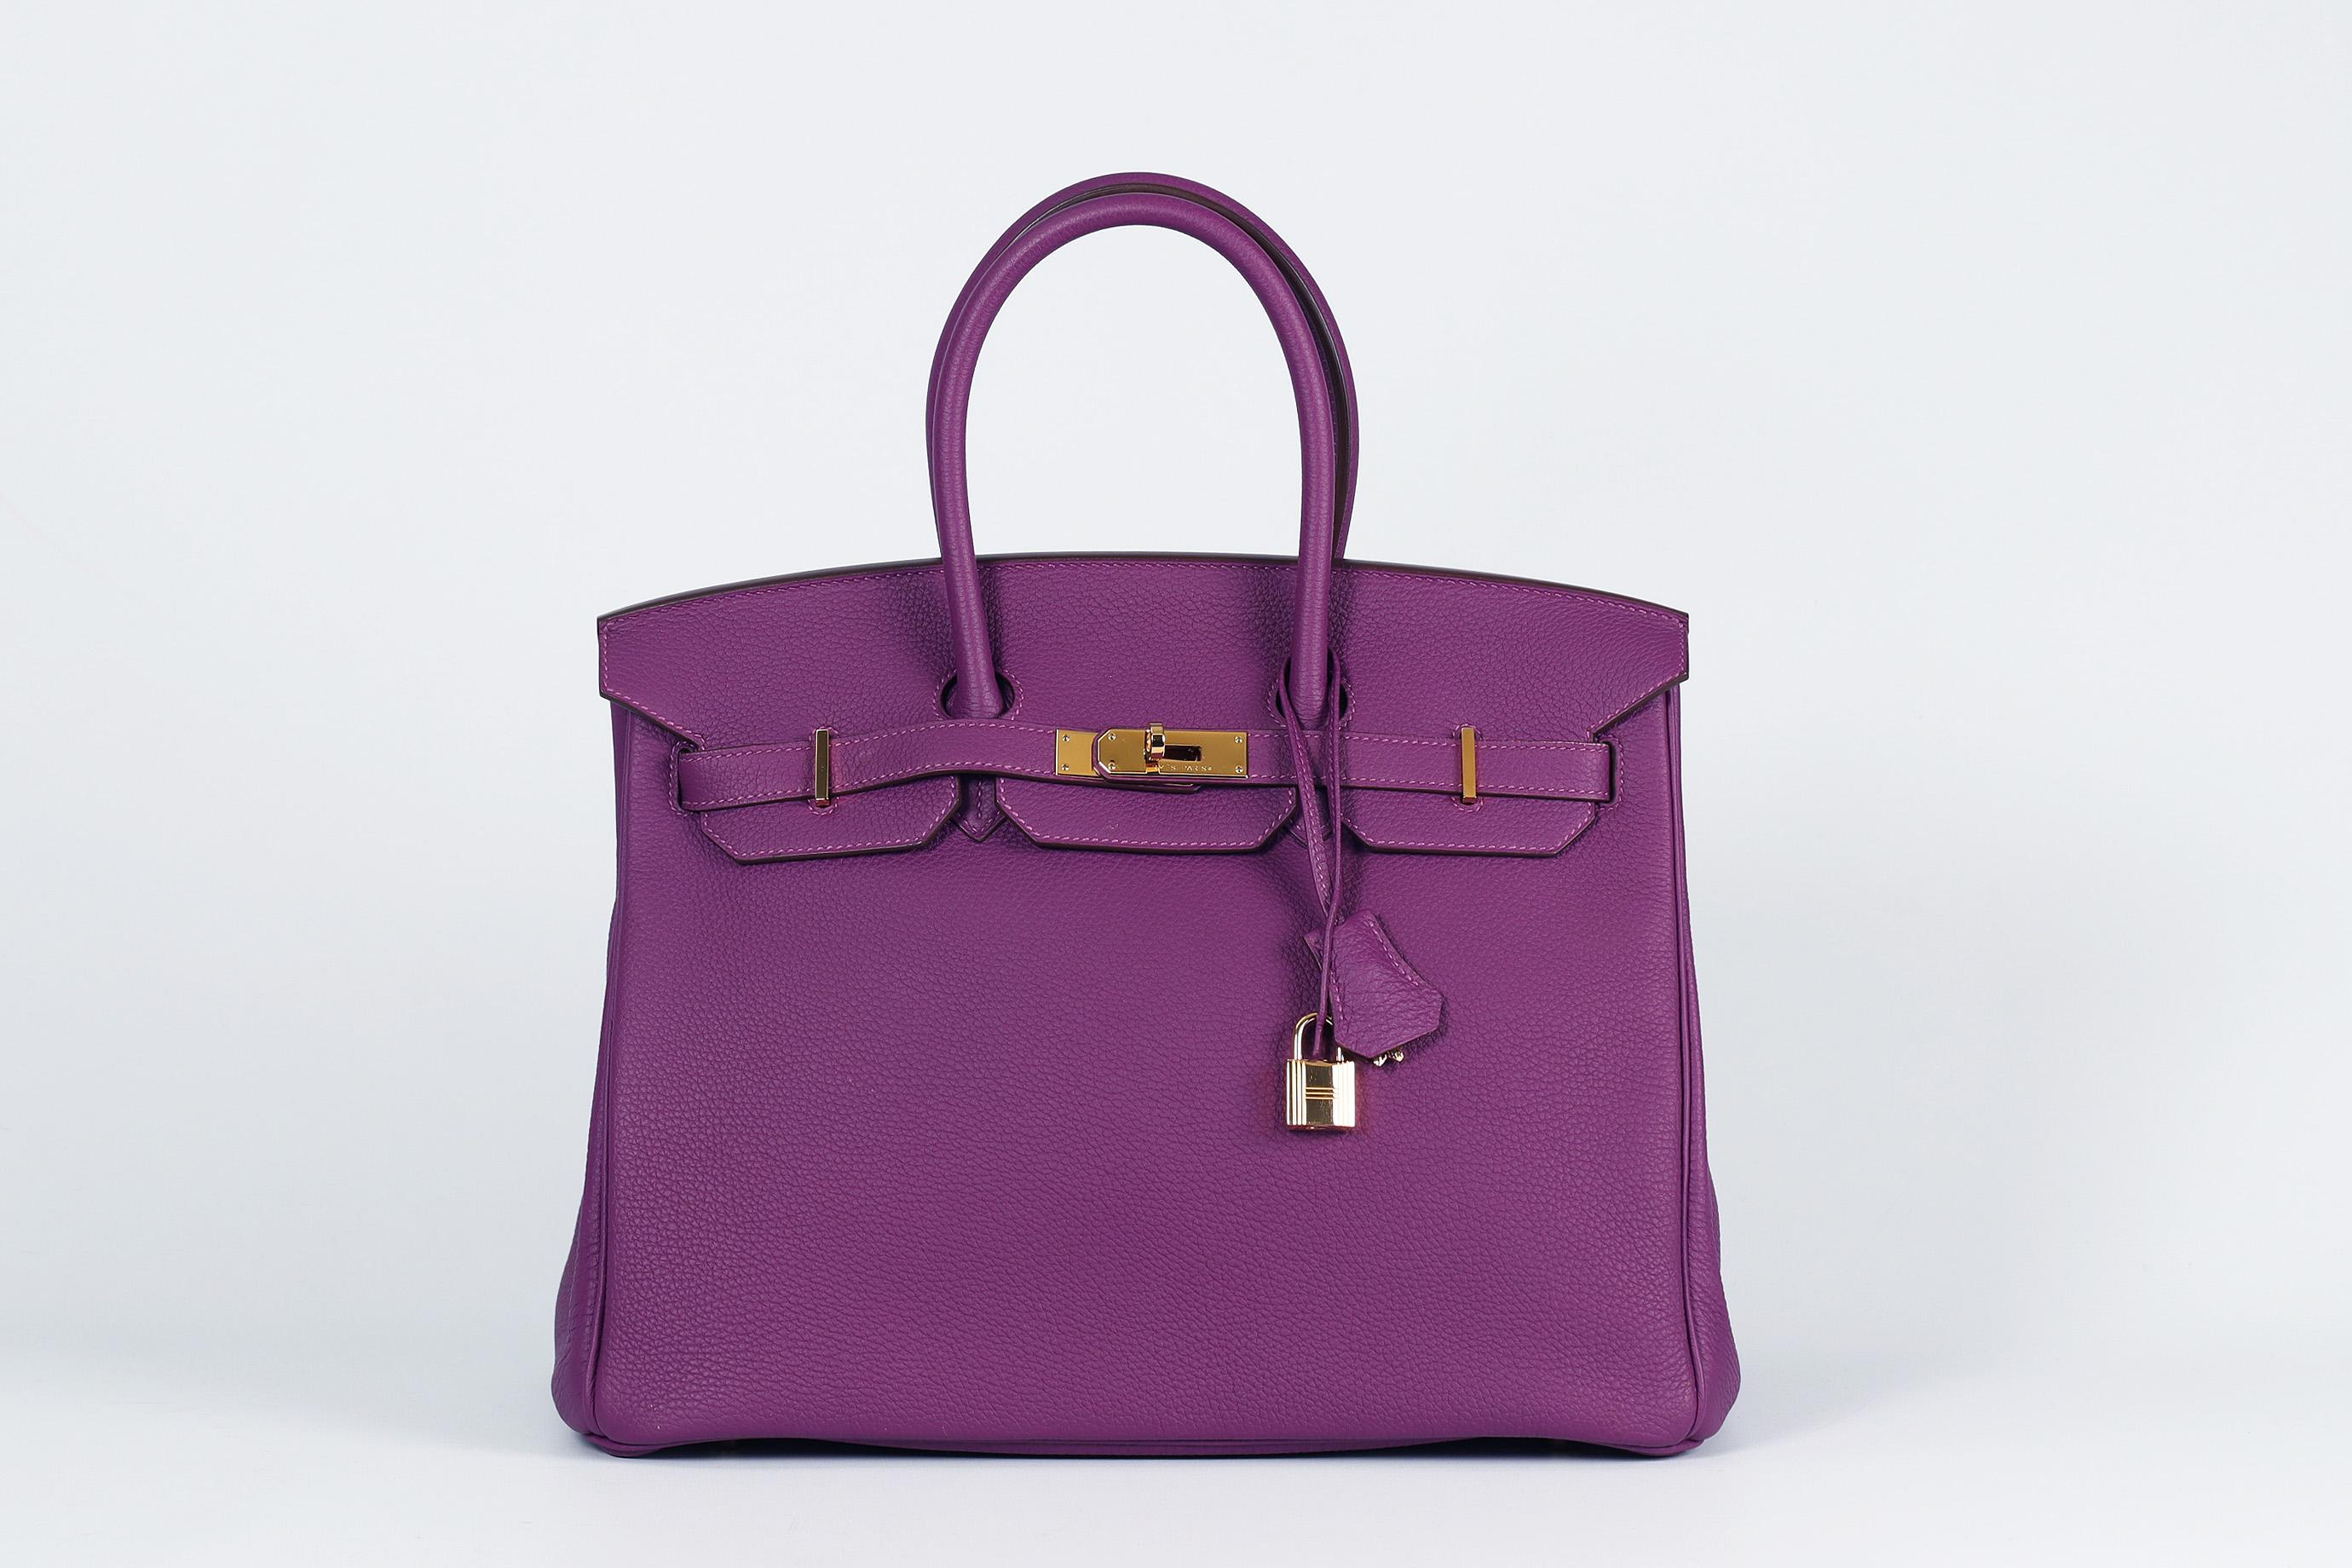 <ul>
<li>Hermès 2014 Birkin 35Cm Togo Leather Bag.</li>
<li>Pourpre.</li>
<li>Fabriqué en France, ce magnifique sac à main Hermès 'Birkin' 2014 a été réalisé en cuir 'Togo' violet extérieur en 'Anémone' avec un intérieur en cuir assorti, cette pièce